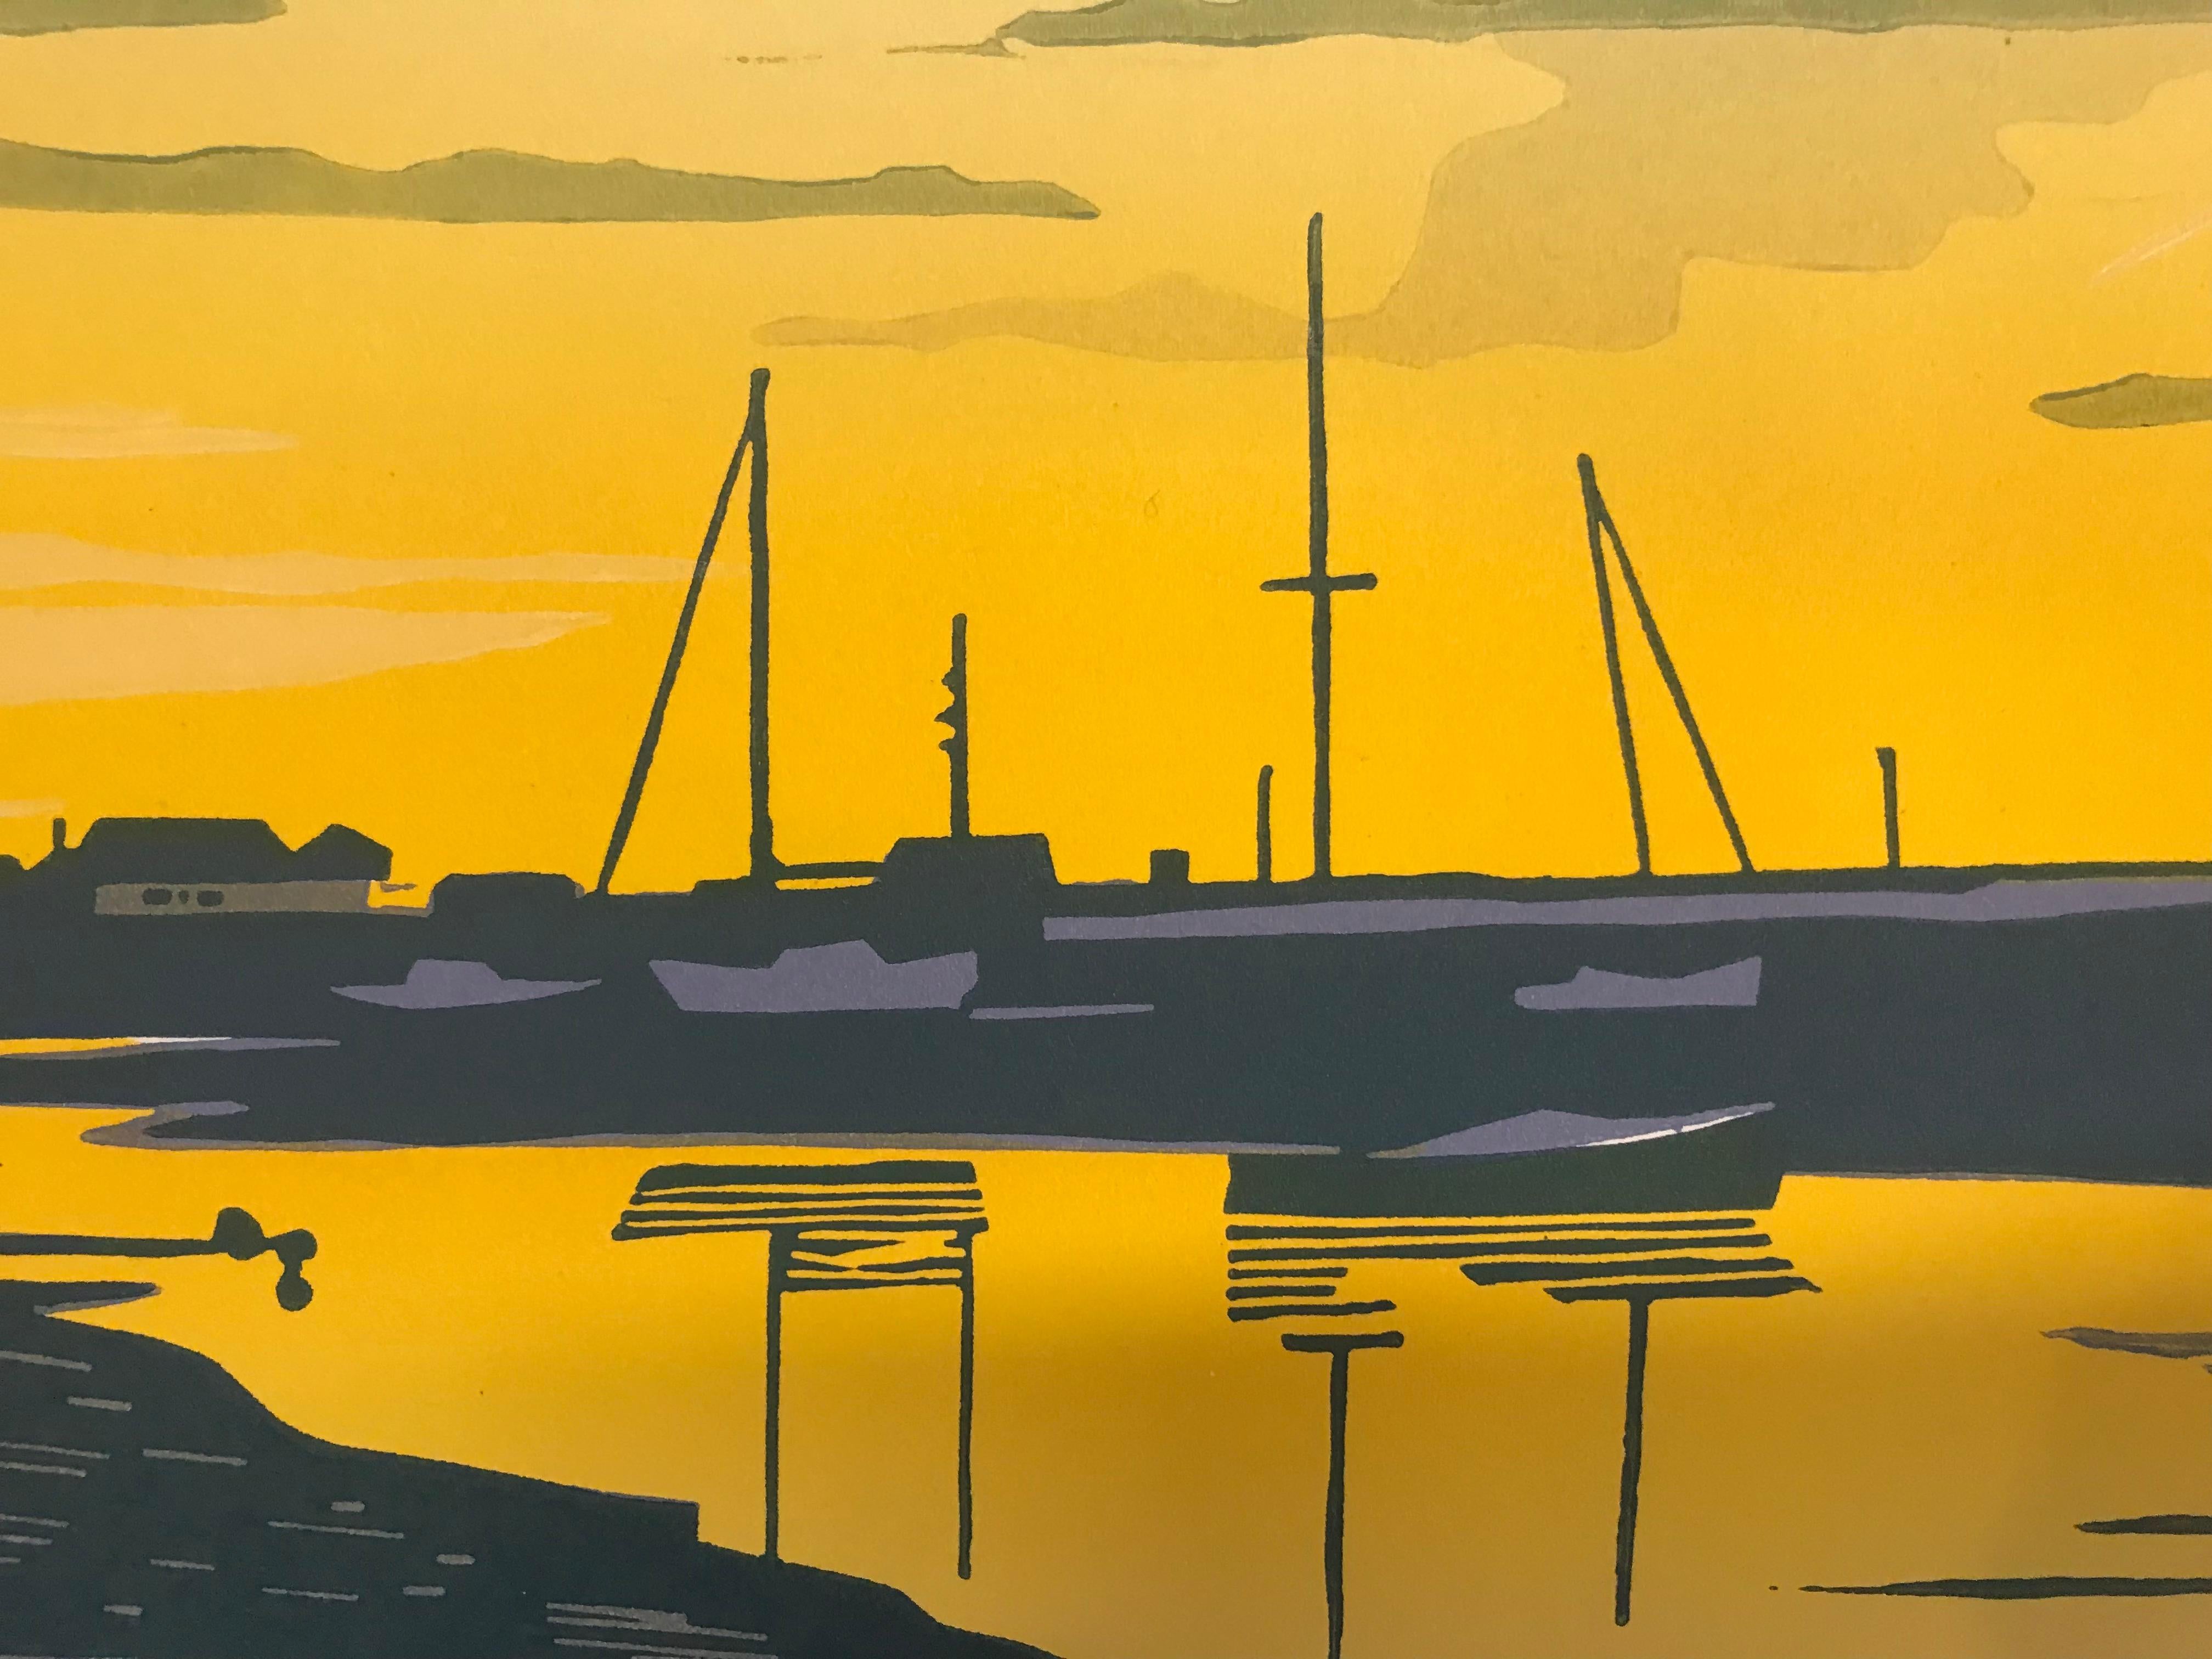 Wells Sunset ist ein Linoldruck von Colin Moore. Die Sonnenuntergangsszene zeigt die Küste von Wells in Somerset, mit Booten am Horizont und treibenden Wolken über der untergehenden Sonne. Dieser handgefertigte Linolschnitt mit seiner